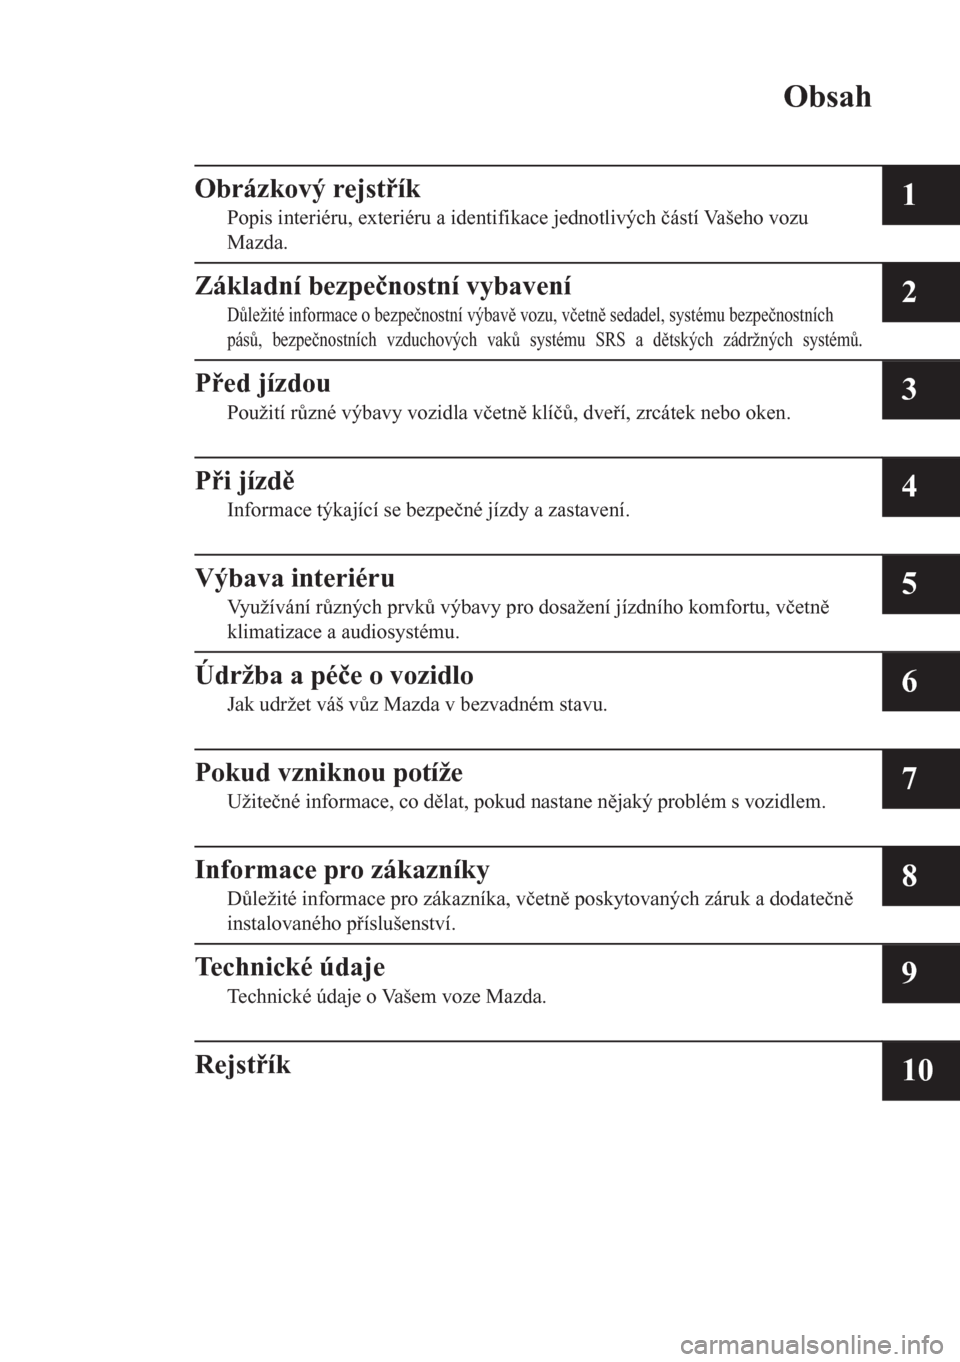 MAZDA MODEL CX-5 2018  Návod k obsluze (in Czech) Obsah
Obrázkový rejstík
Popis interiéru, exteriéru a identifikace jednotlivých �þástí Vašeho vozu
Mazda.1
Základní bezpe�þnostní vybavení
D$ležité informace o bezpe�þnostní výba